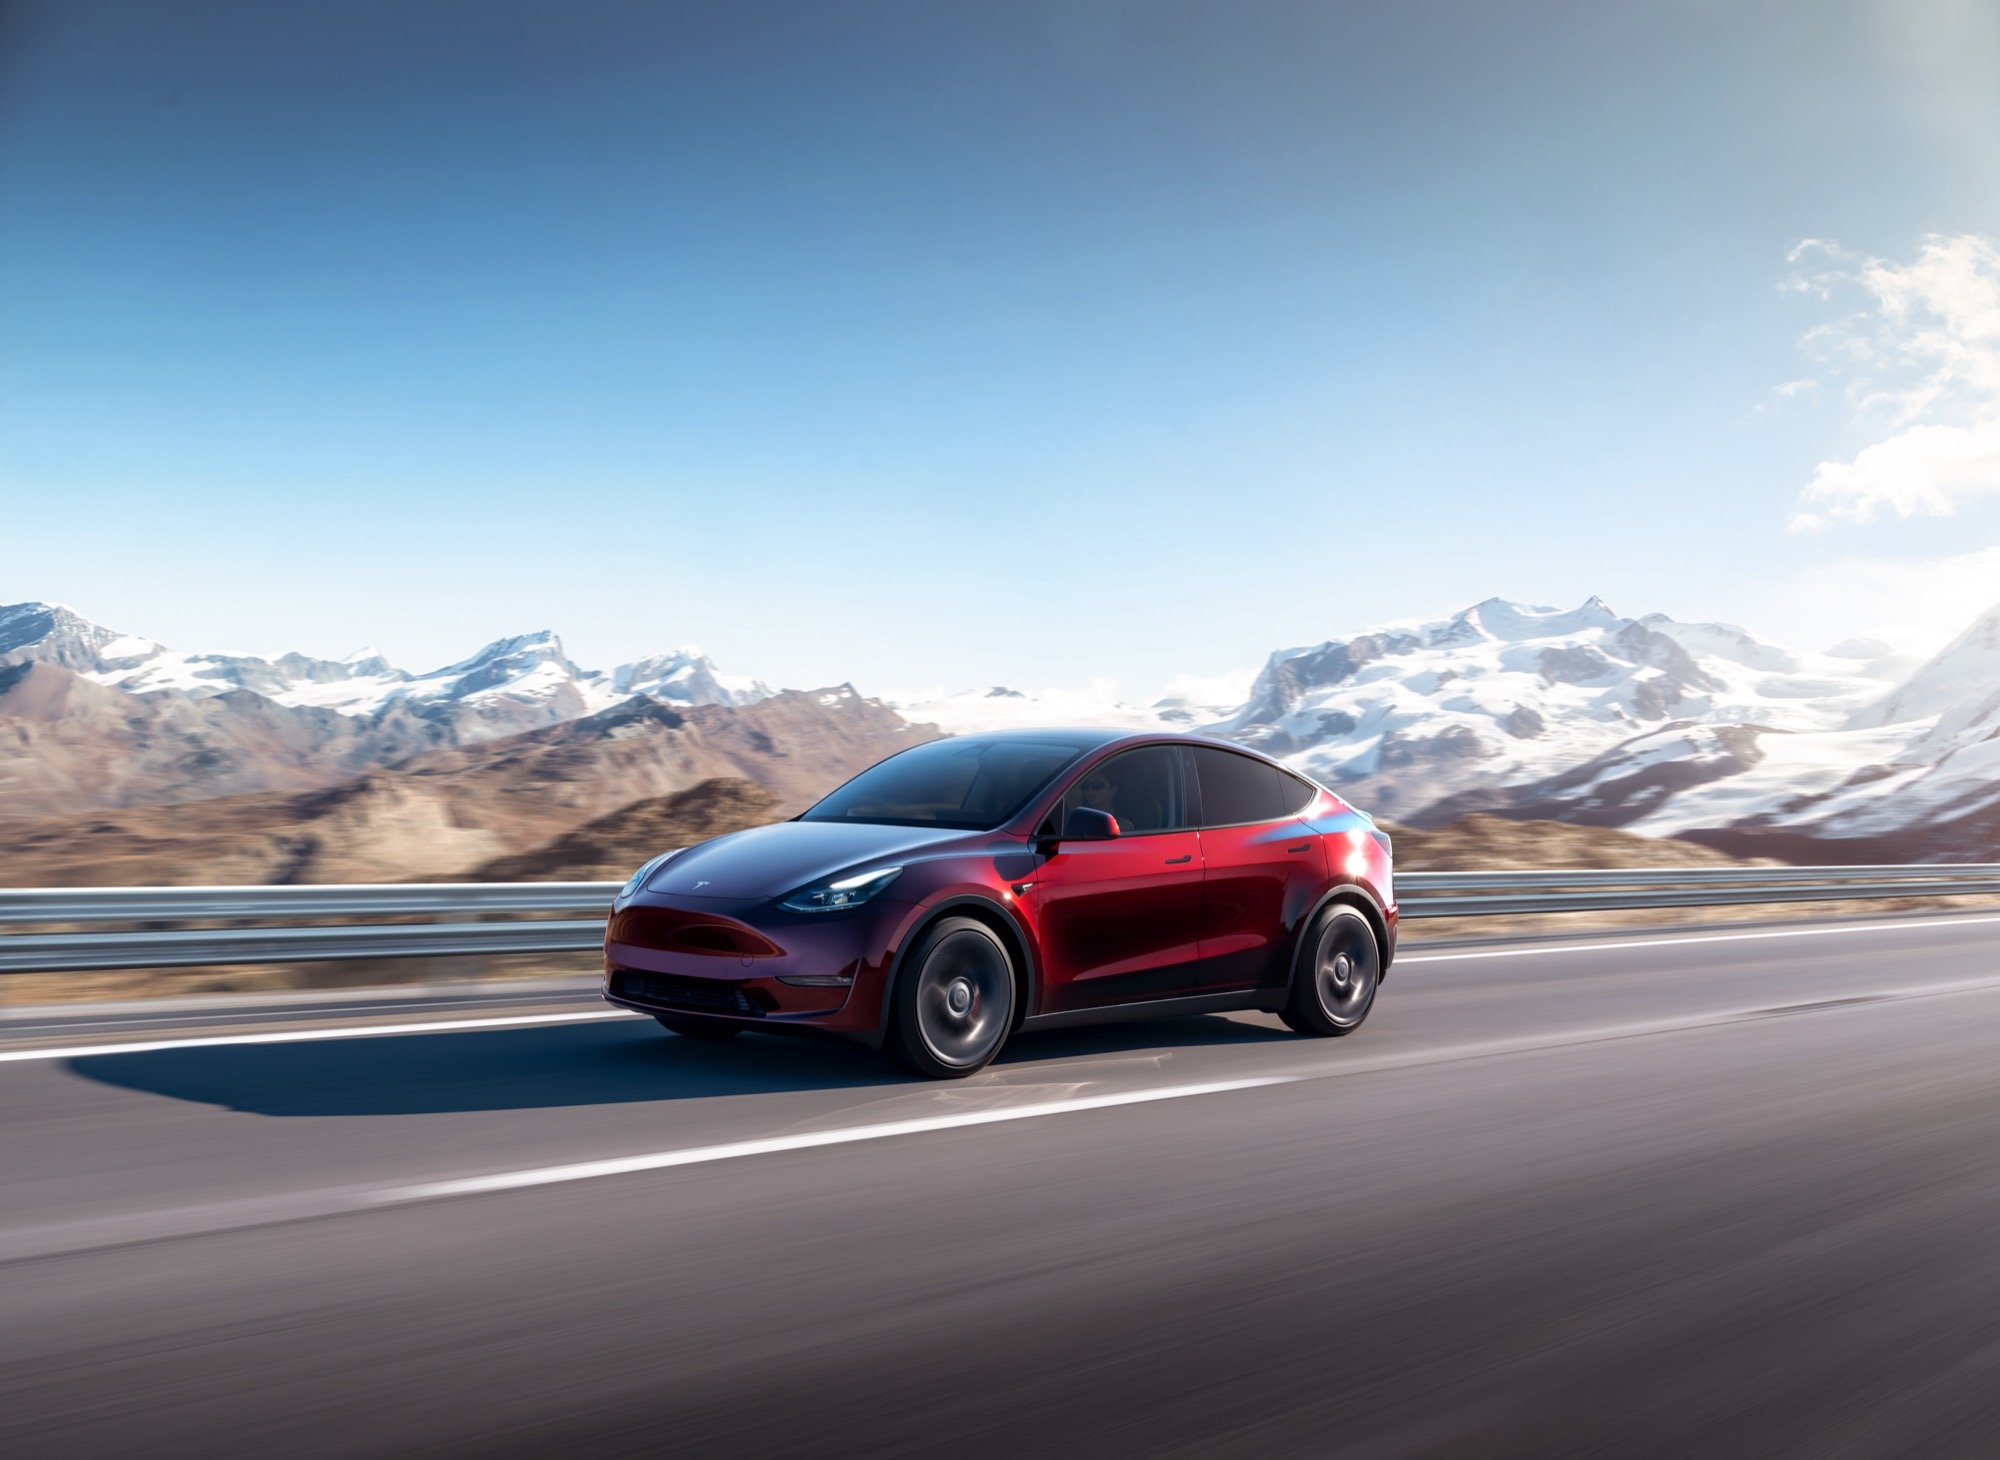 Mauvaise nouvelle pour la future Tesla Model Y